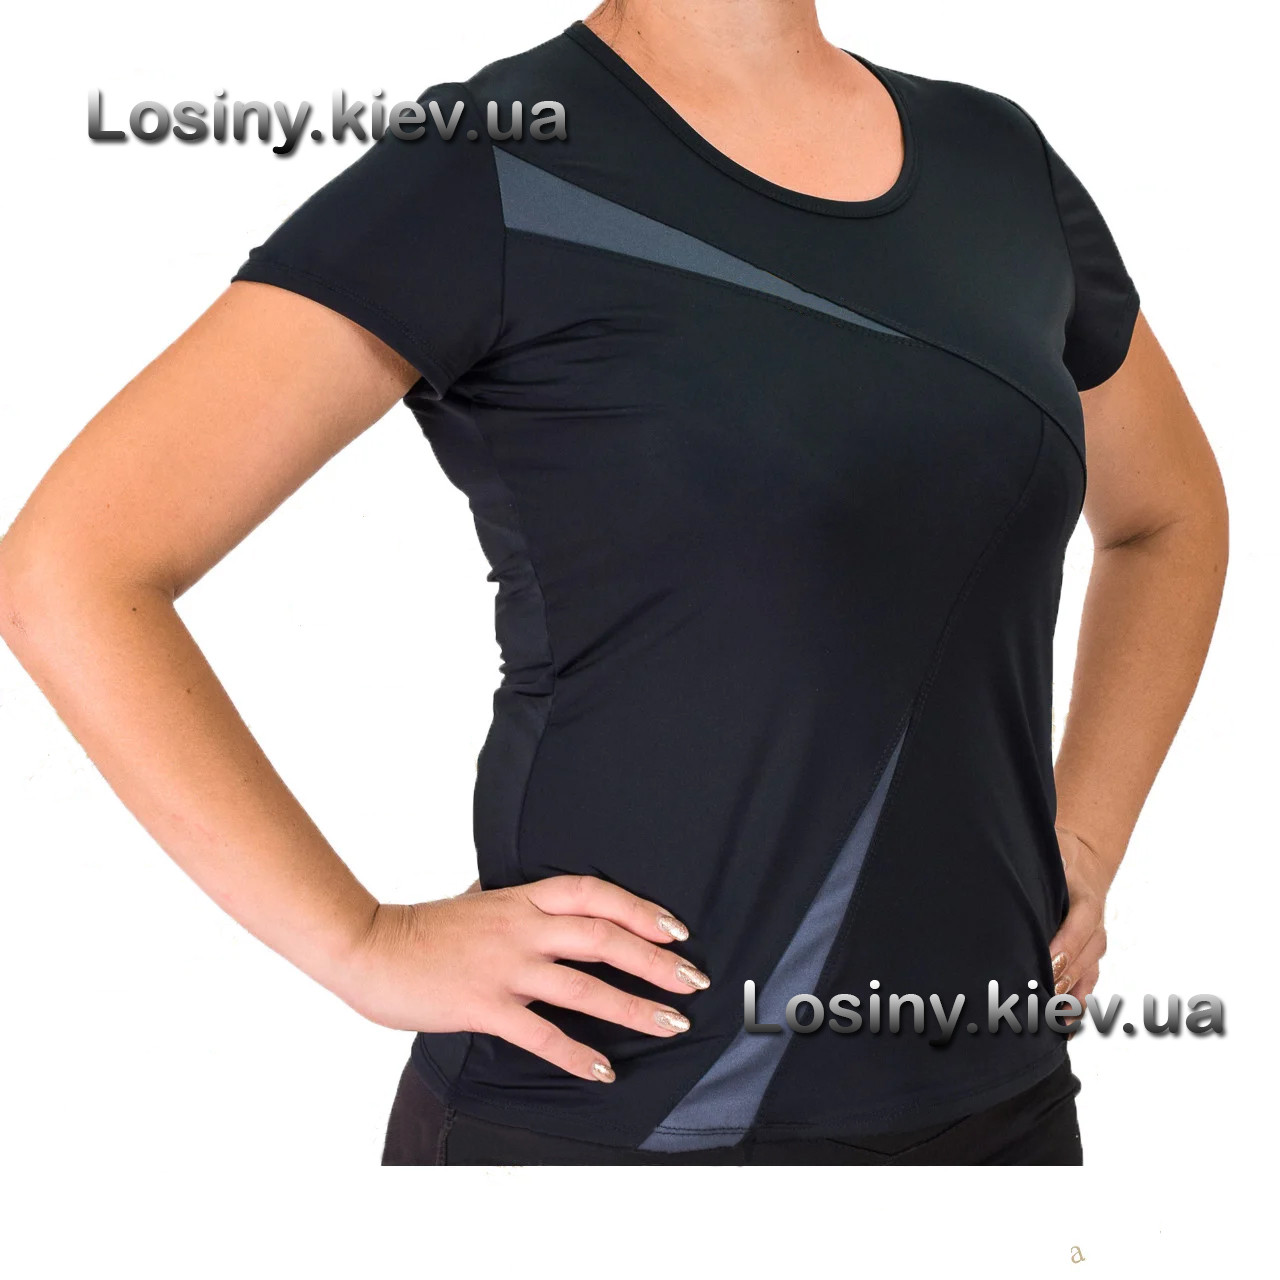 Жіноча футболка для фітнесу батал, жіноча спортивна футболка великих розмірів Vaлерi 4029 з темносірим